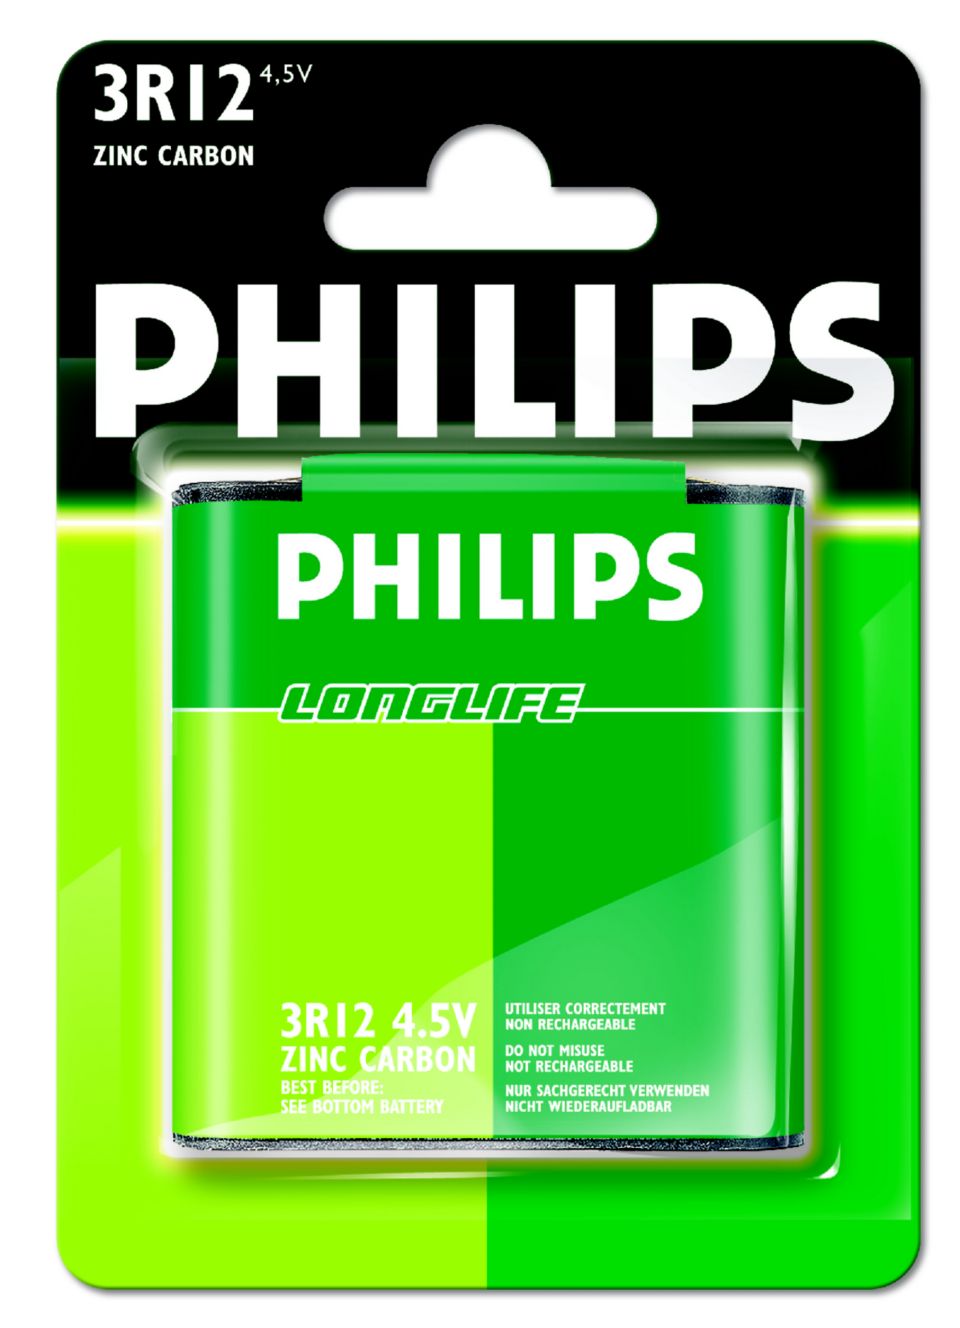 Б филипс. Батарея 3r12. Батарейка 3r12. Батарейки Philips. Аккумуляторные батарейки Philips.